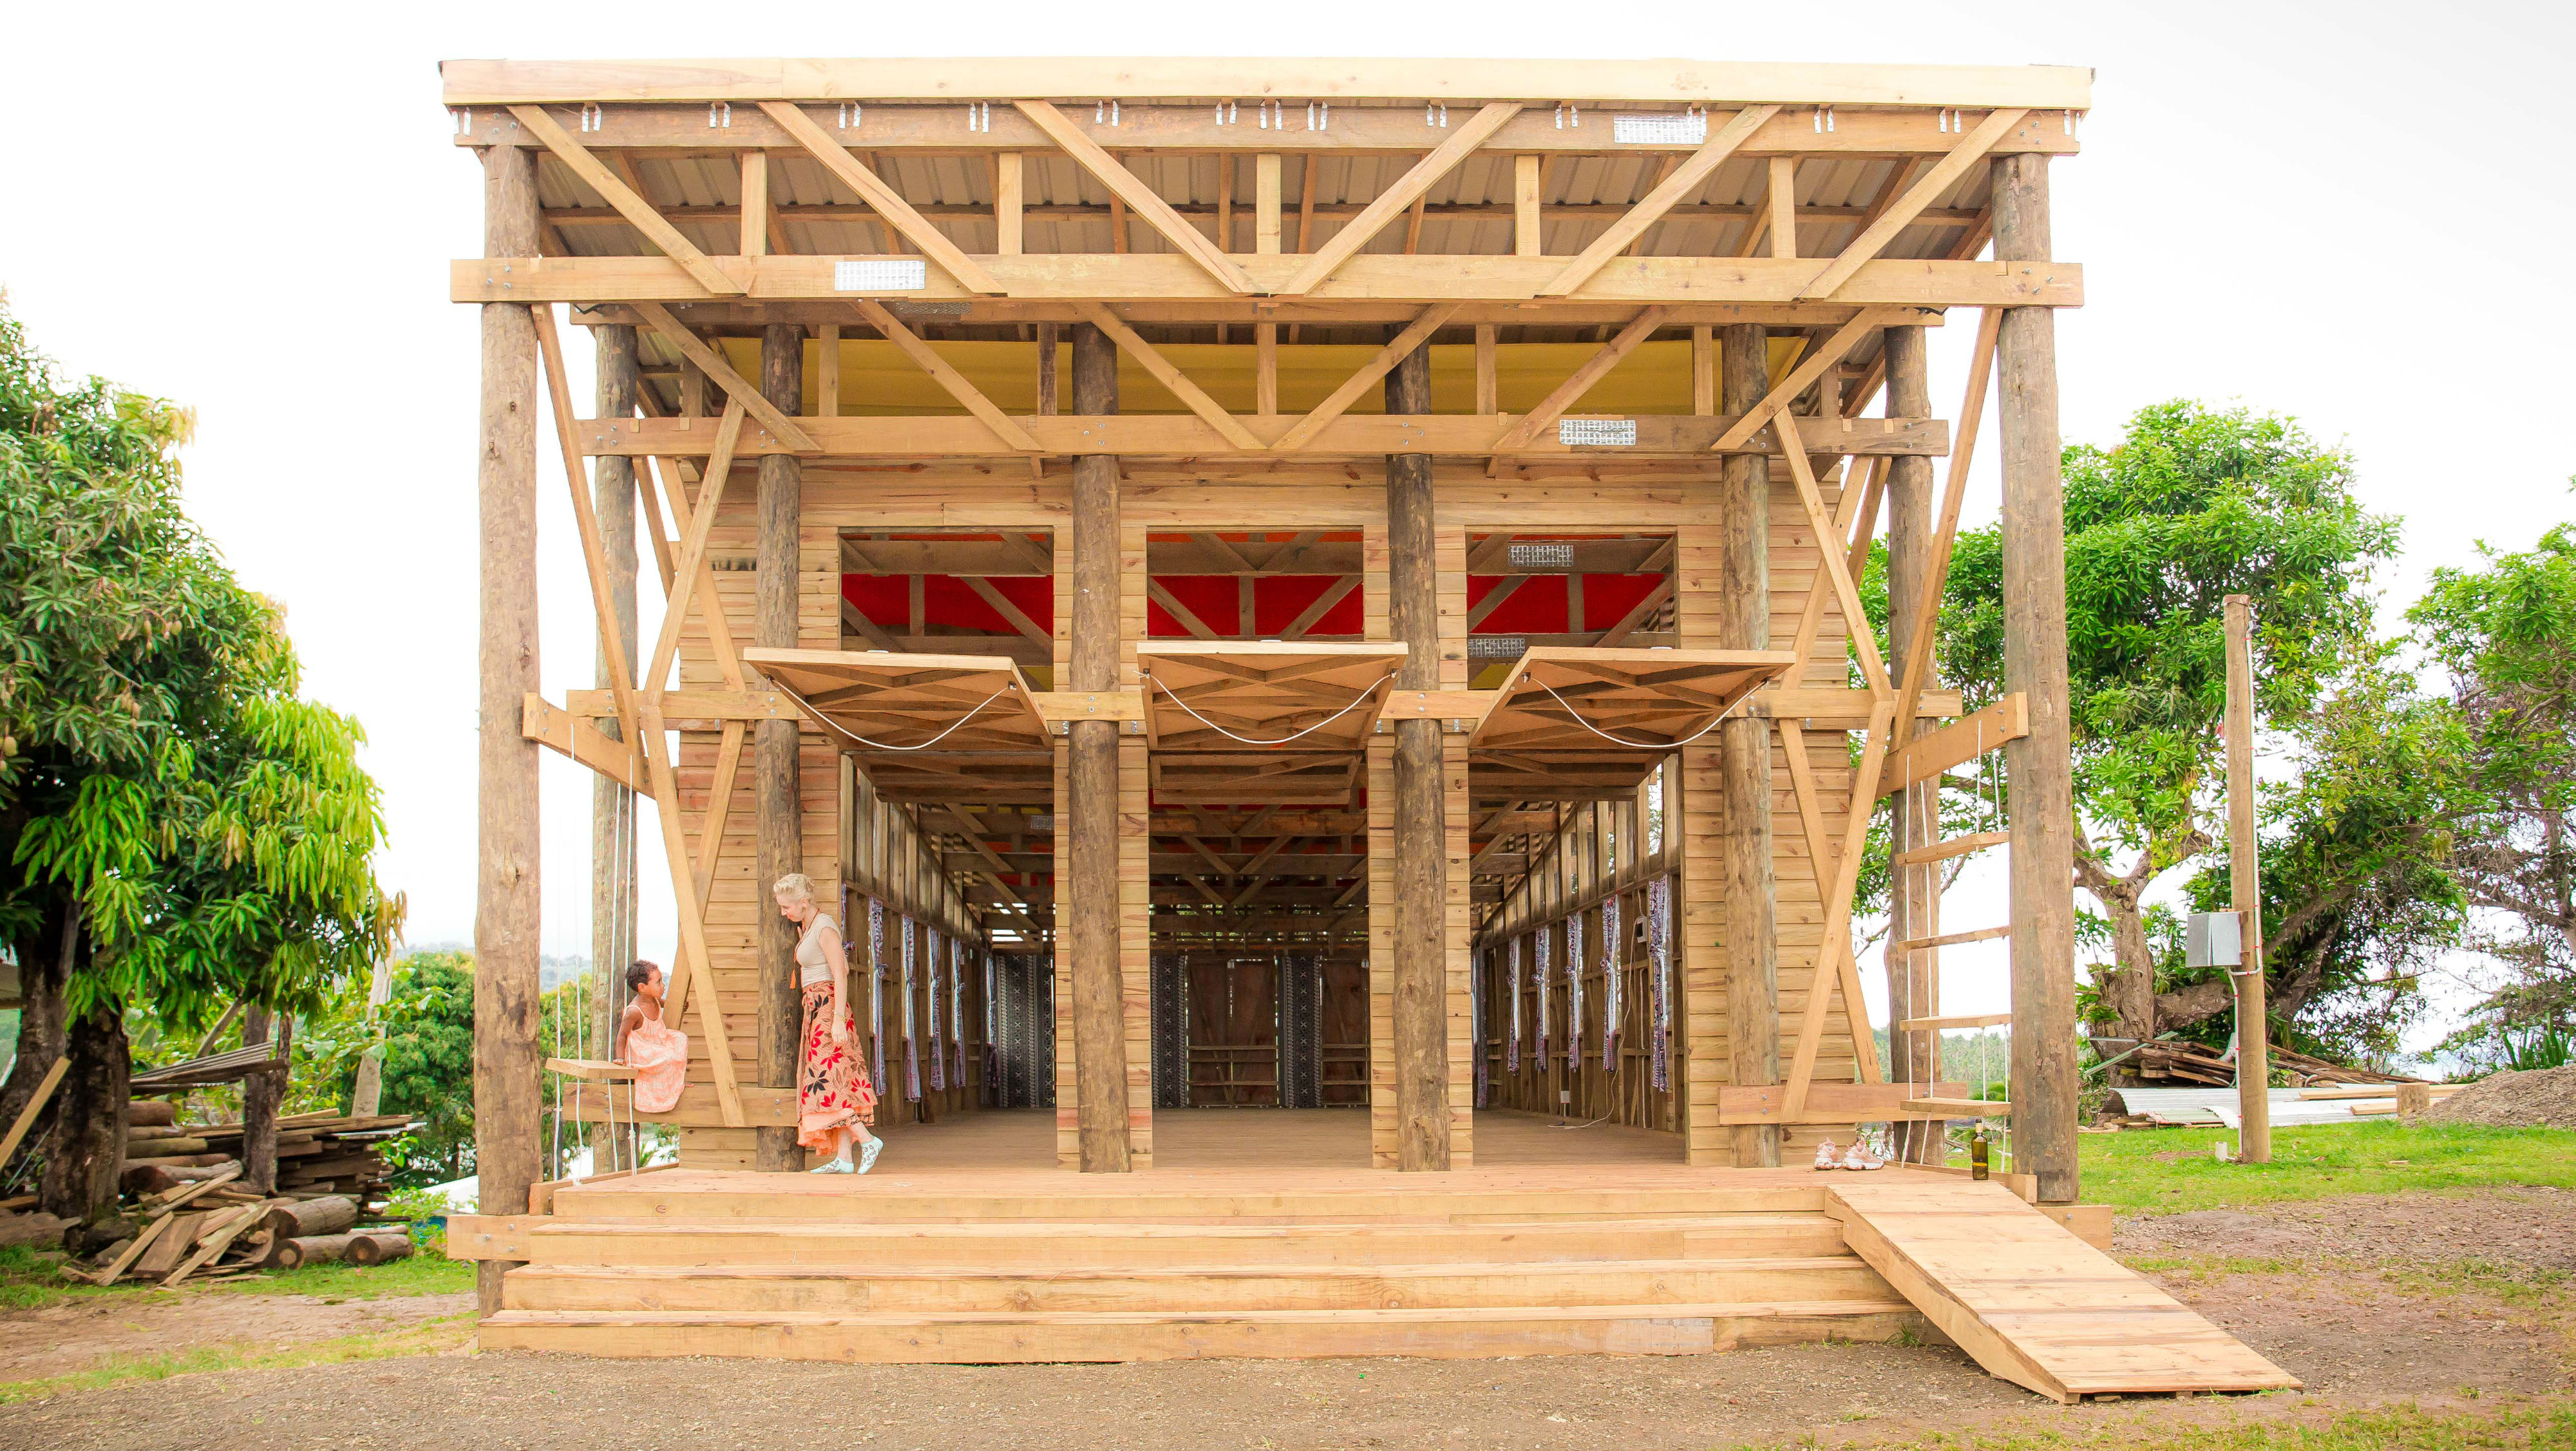 Naidi Community Hall by CAUKIN Studio